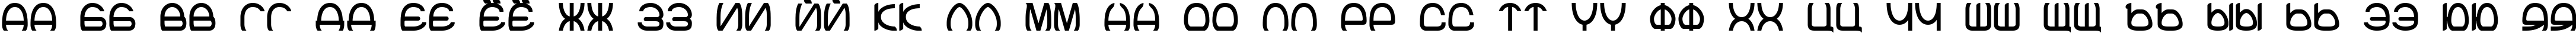 Пример написания русского алфавита шрифтом Joke